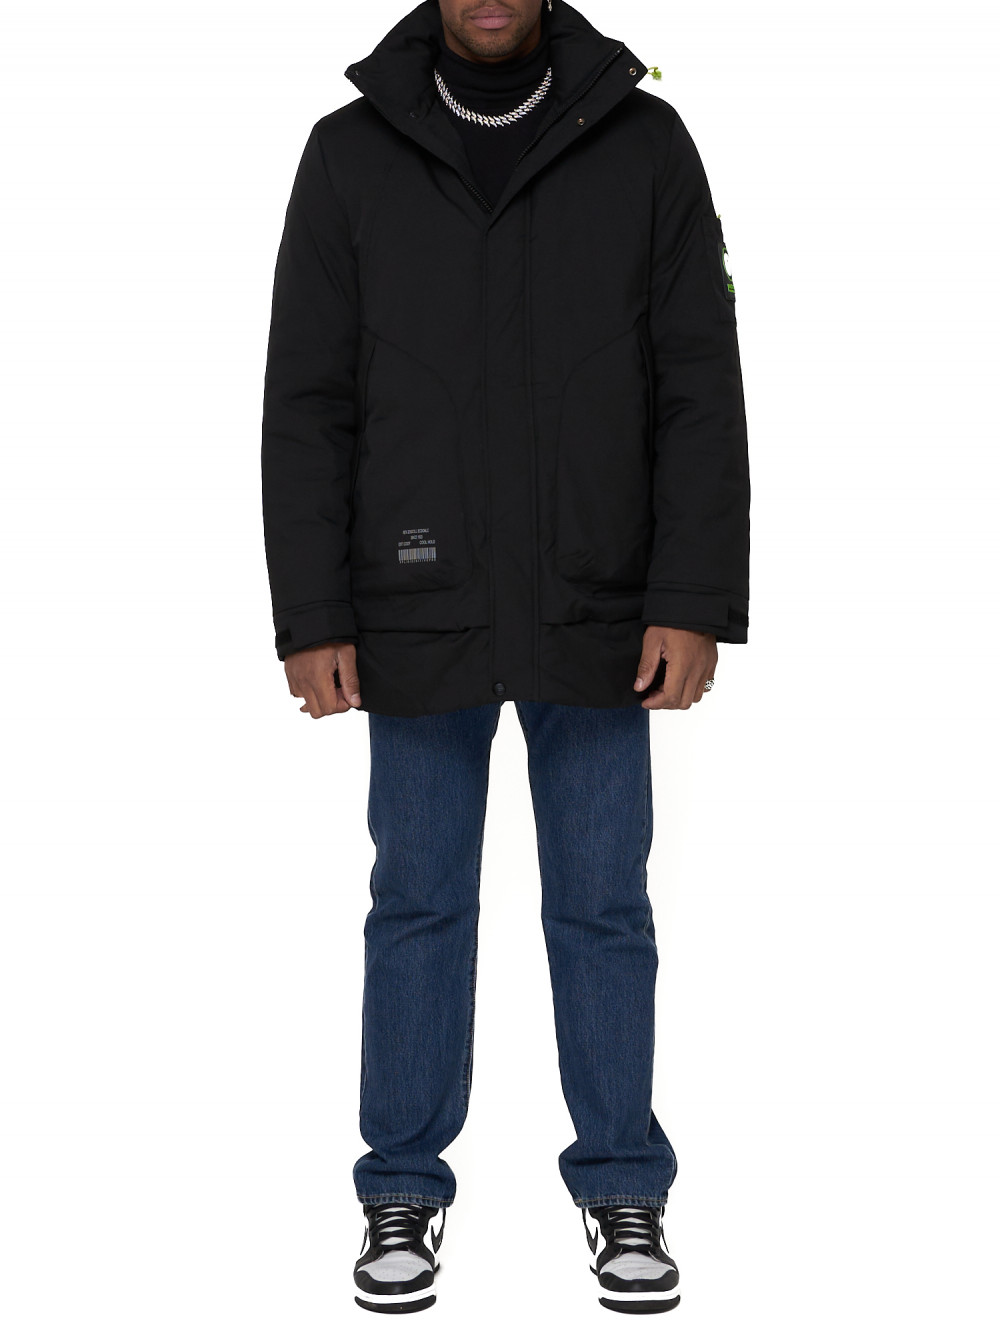 Спортивная куртка мужская NoBrand AD90016 черная L